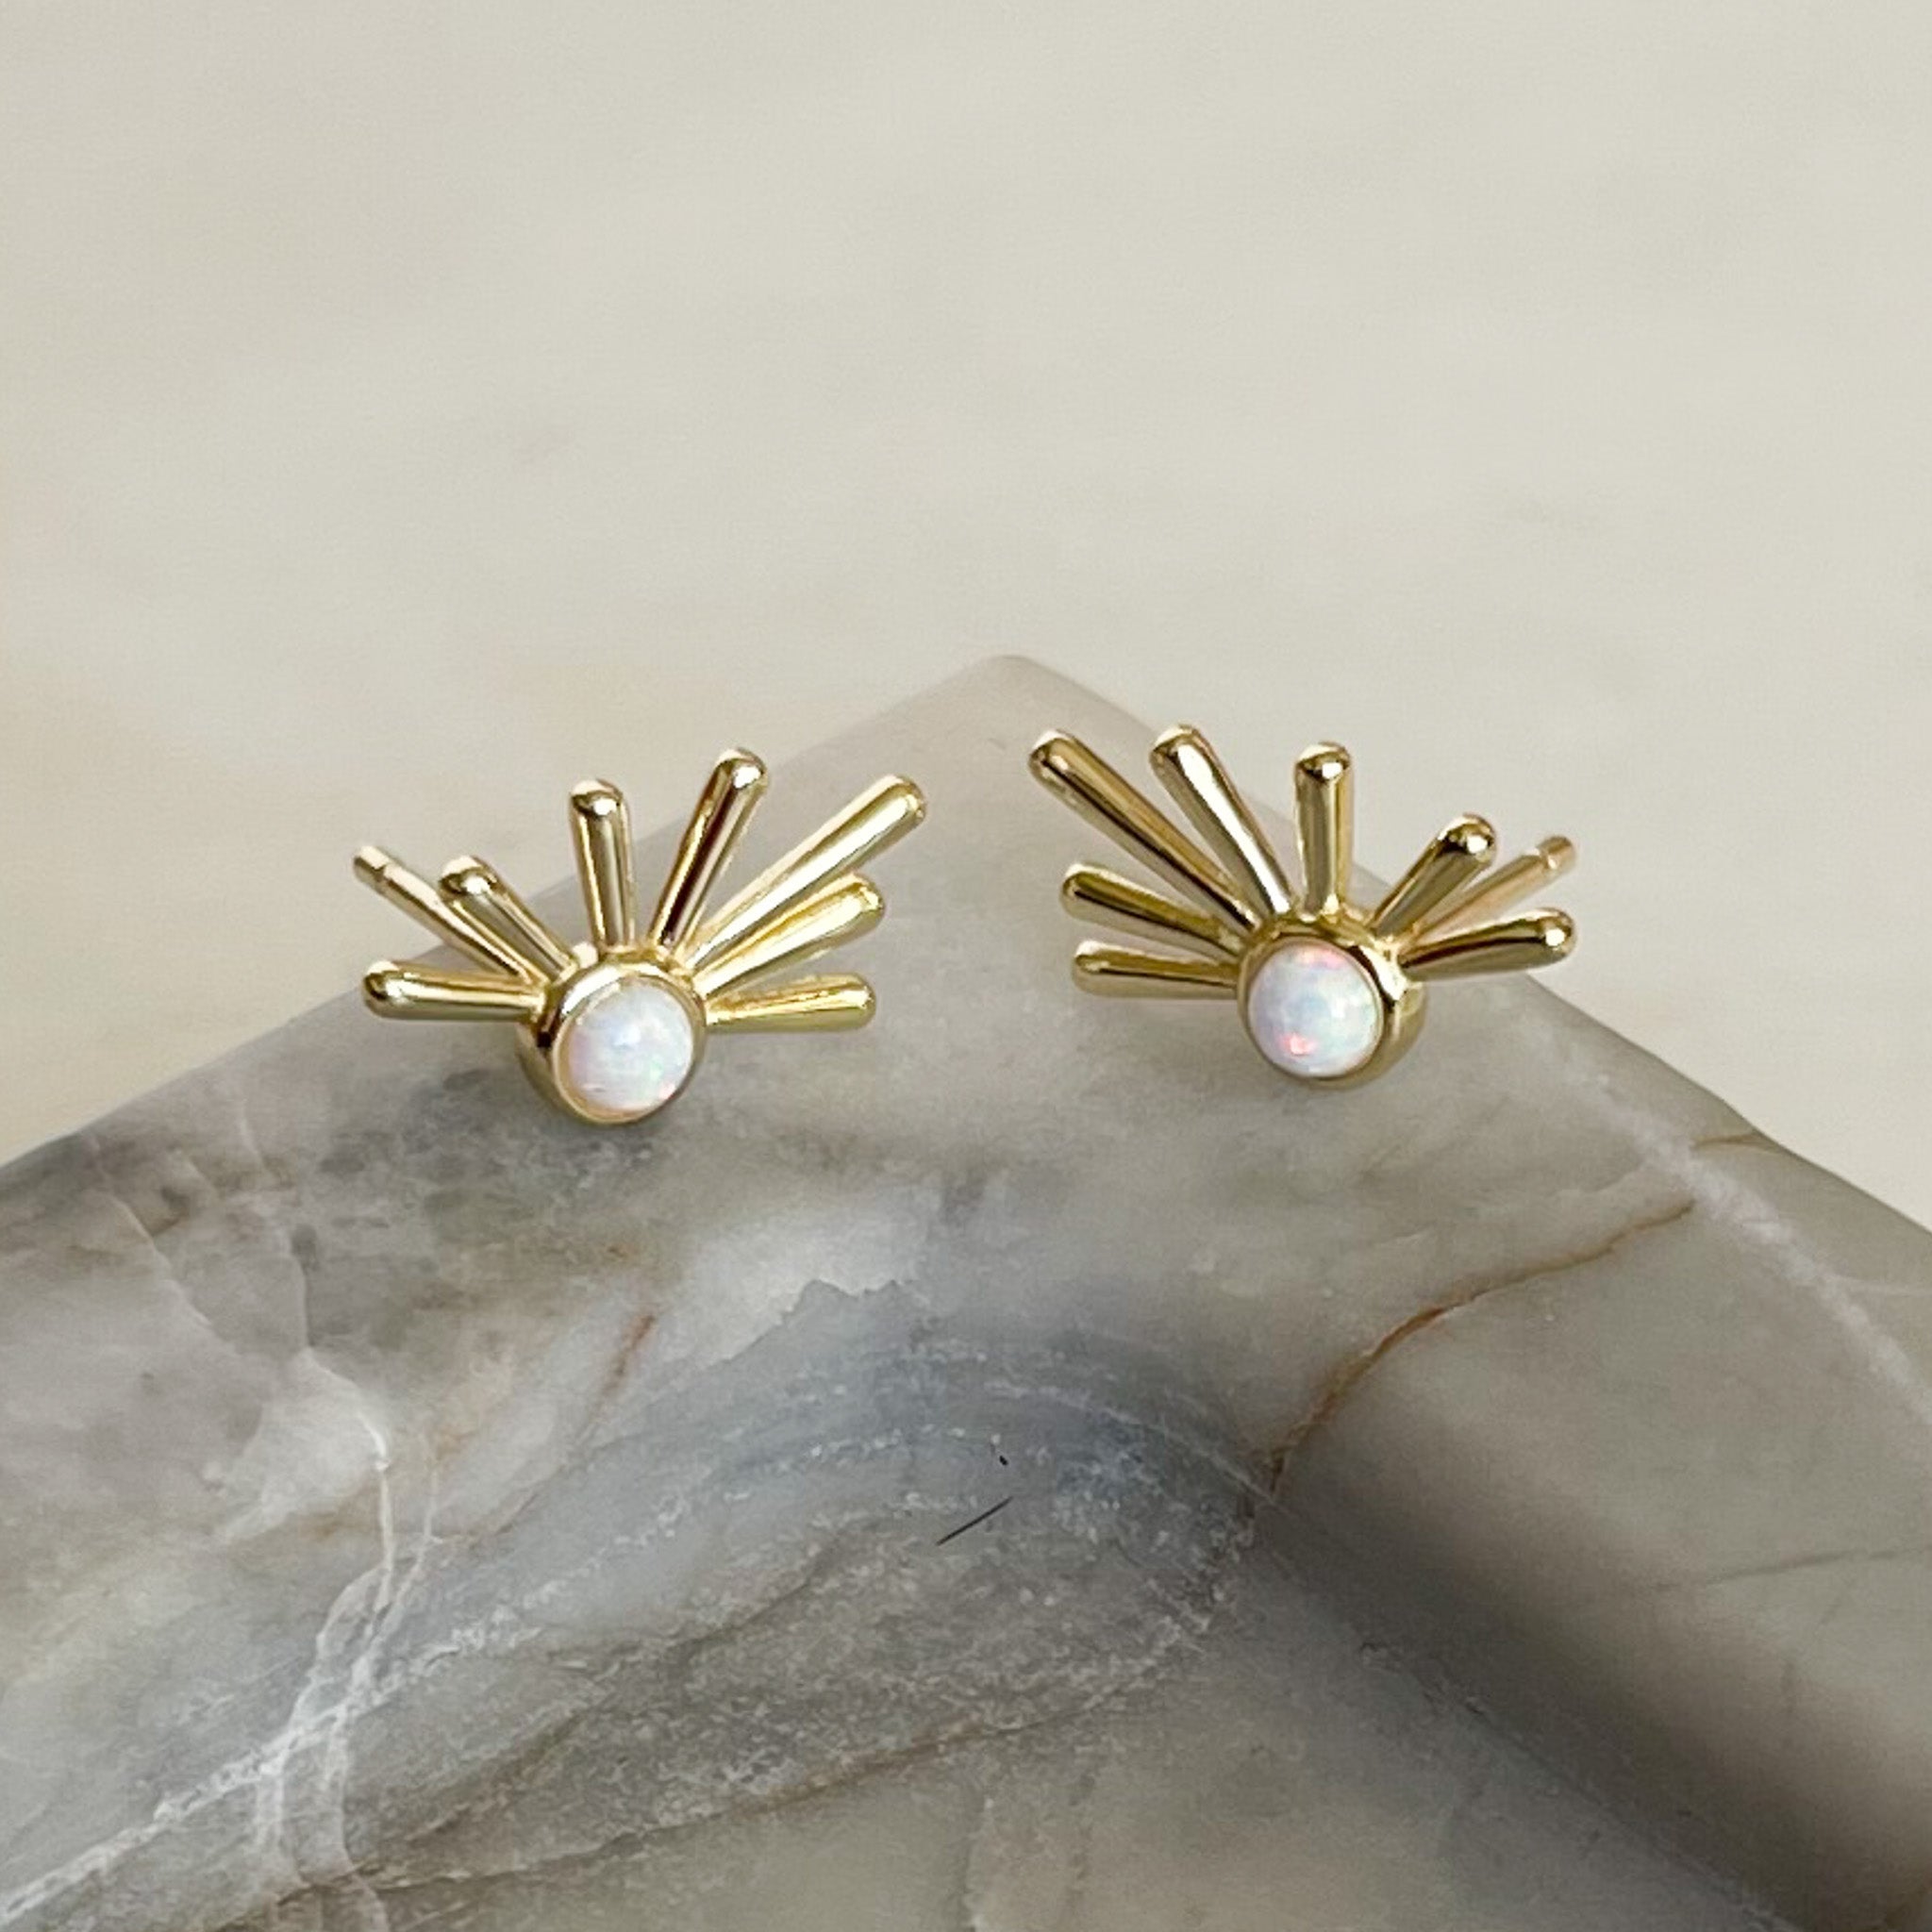 White opal gold stud earrings, unique earrings